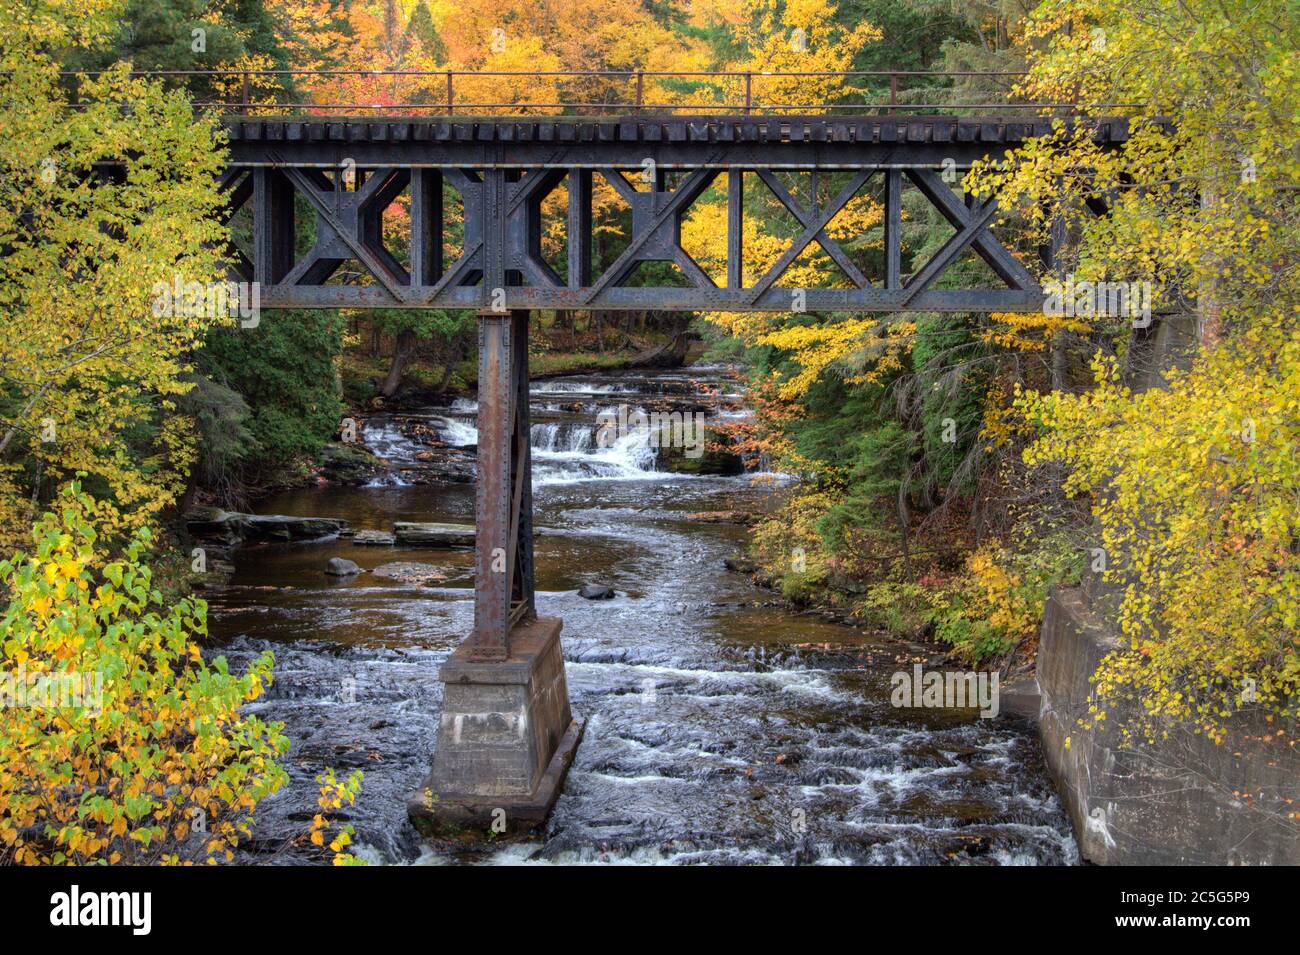 Pont de chemin de fer au-dessus d'une rivière avec une chute d'eau en arrière-plan entouré de couleurs vives d'automne dans une petite ville de Upper Peninsula du Michigan. Banque D'Images